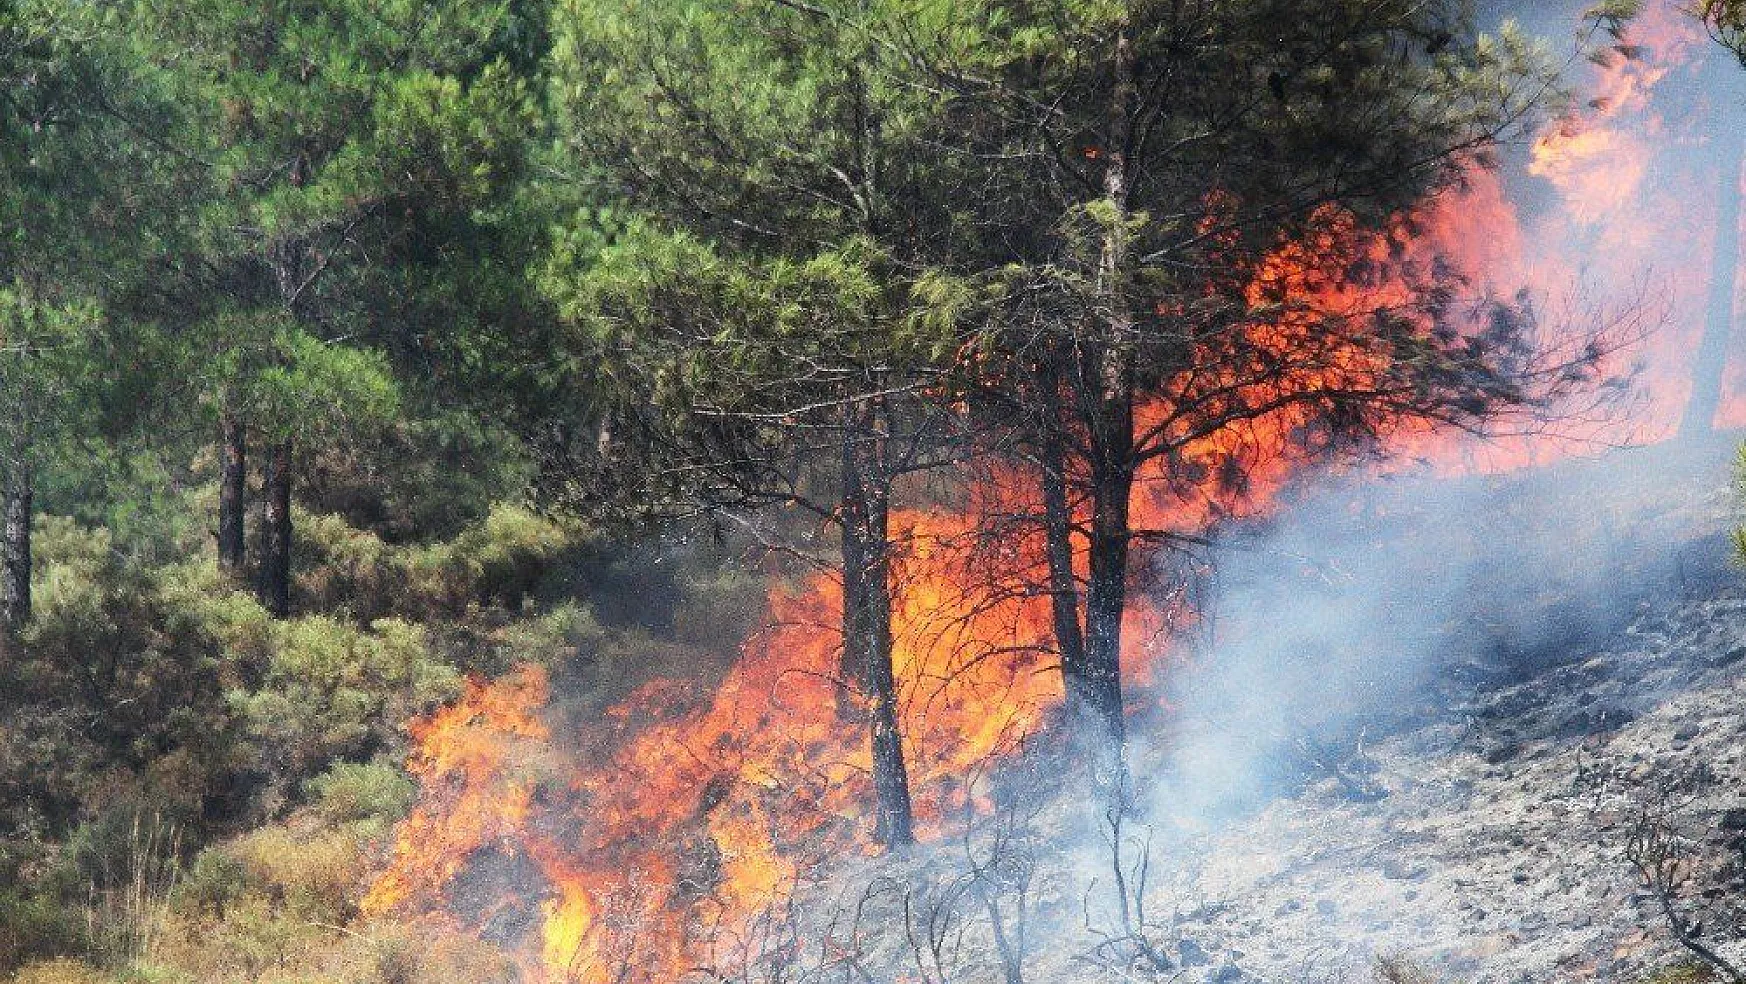 Fethiye'deki orman yangını kontrol altına alındı